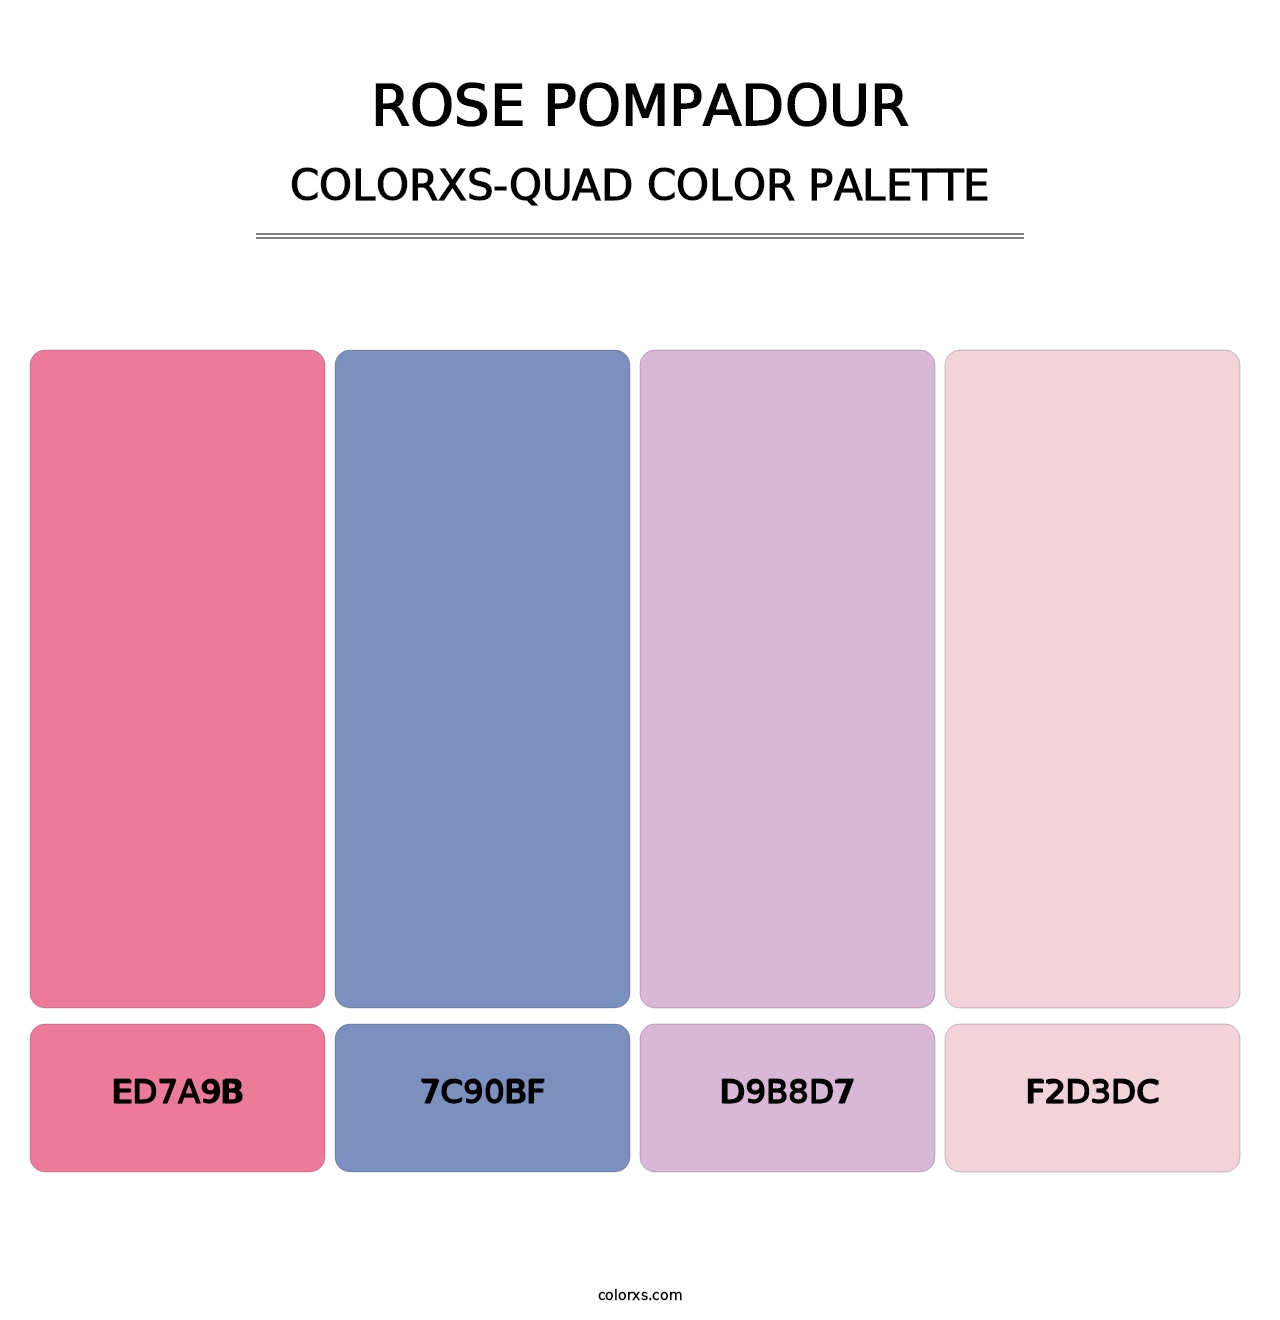 Rose Pompadour - Colorxs Quad Palette